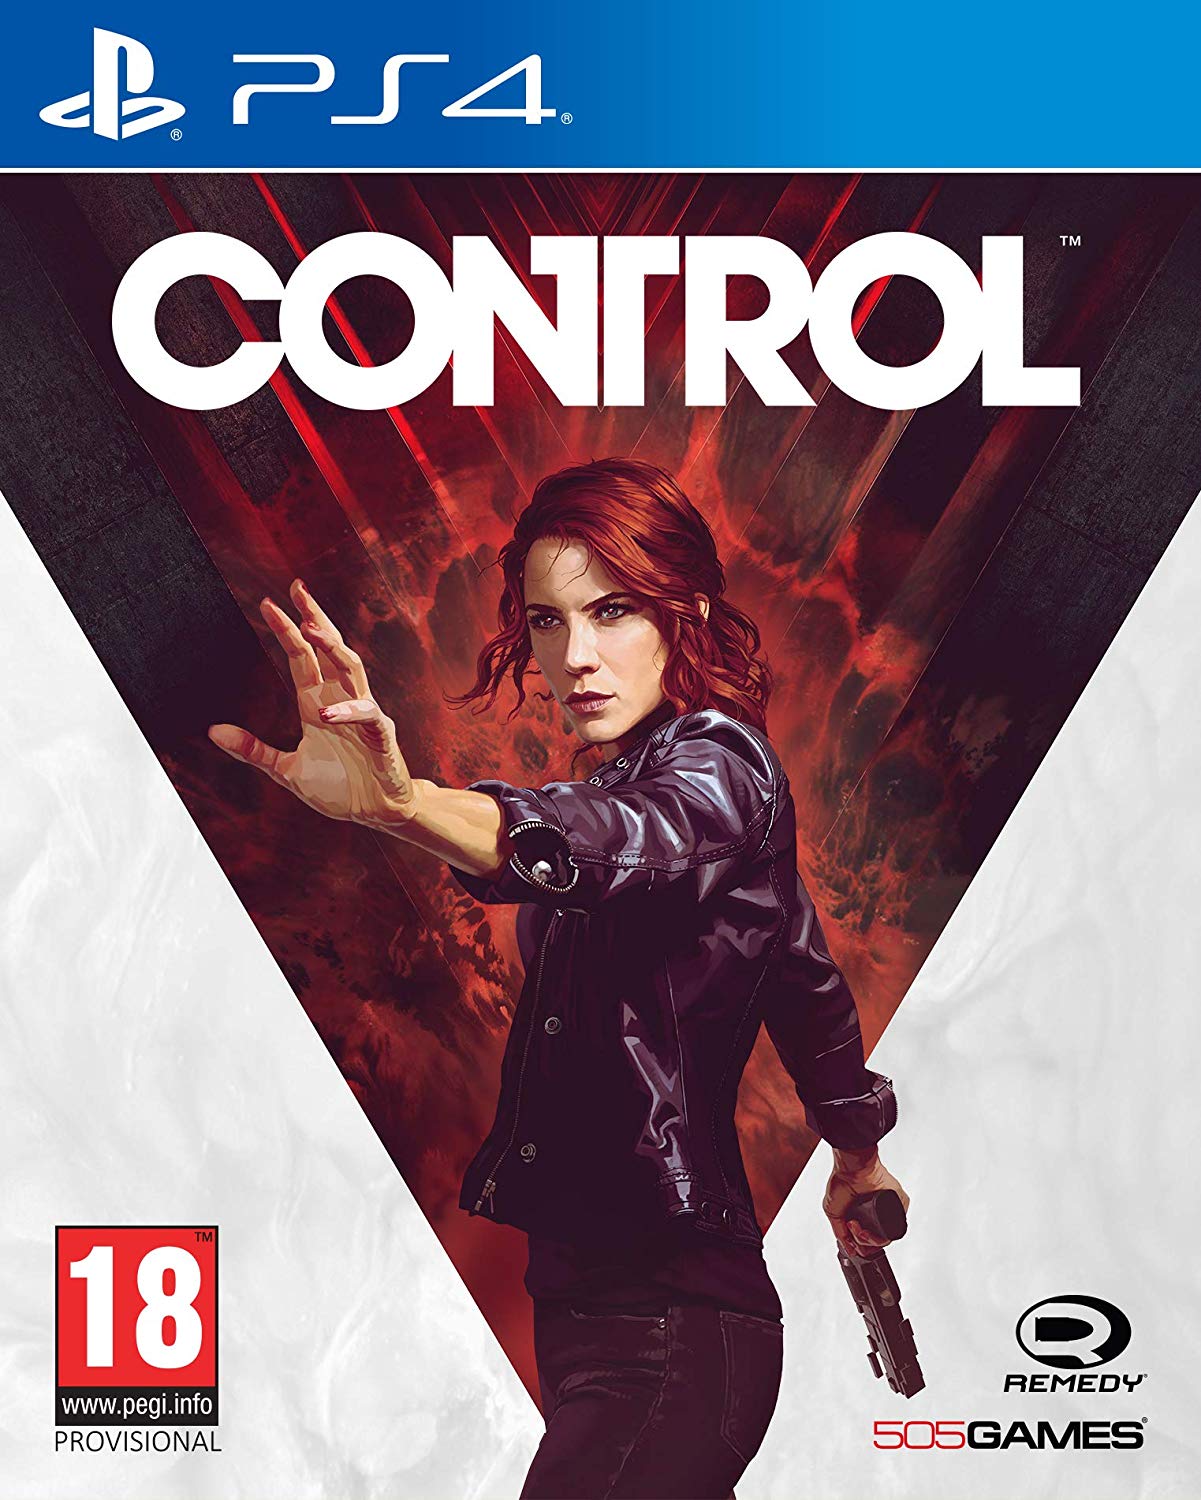 Control (PS4)